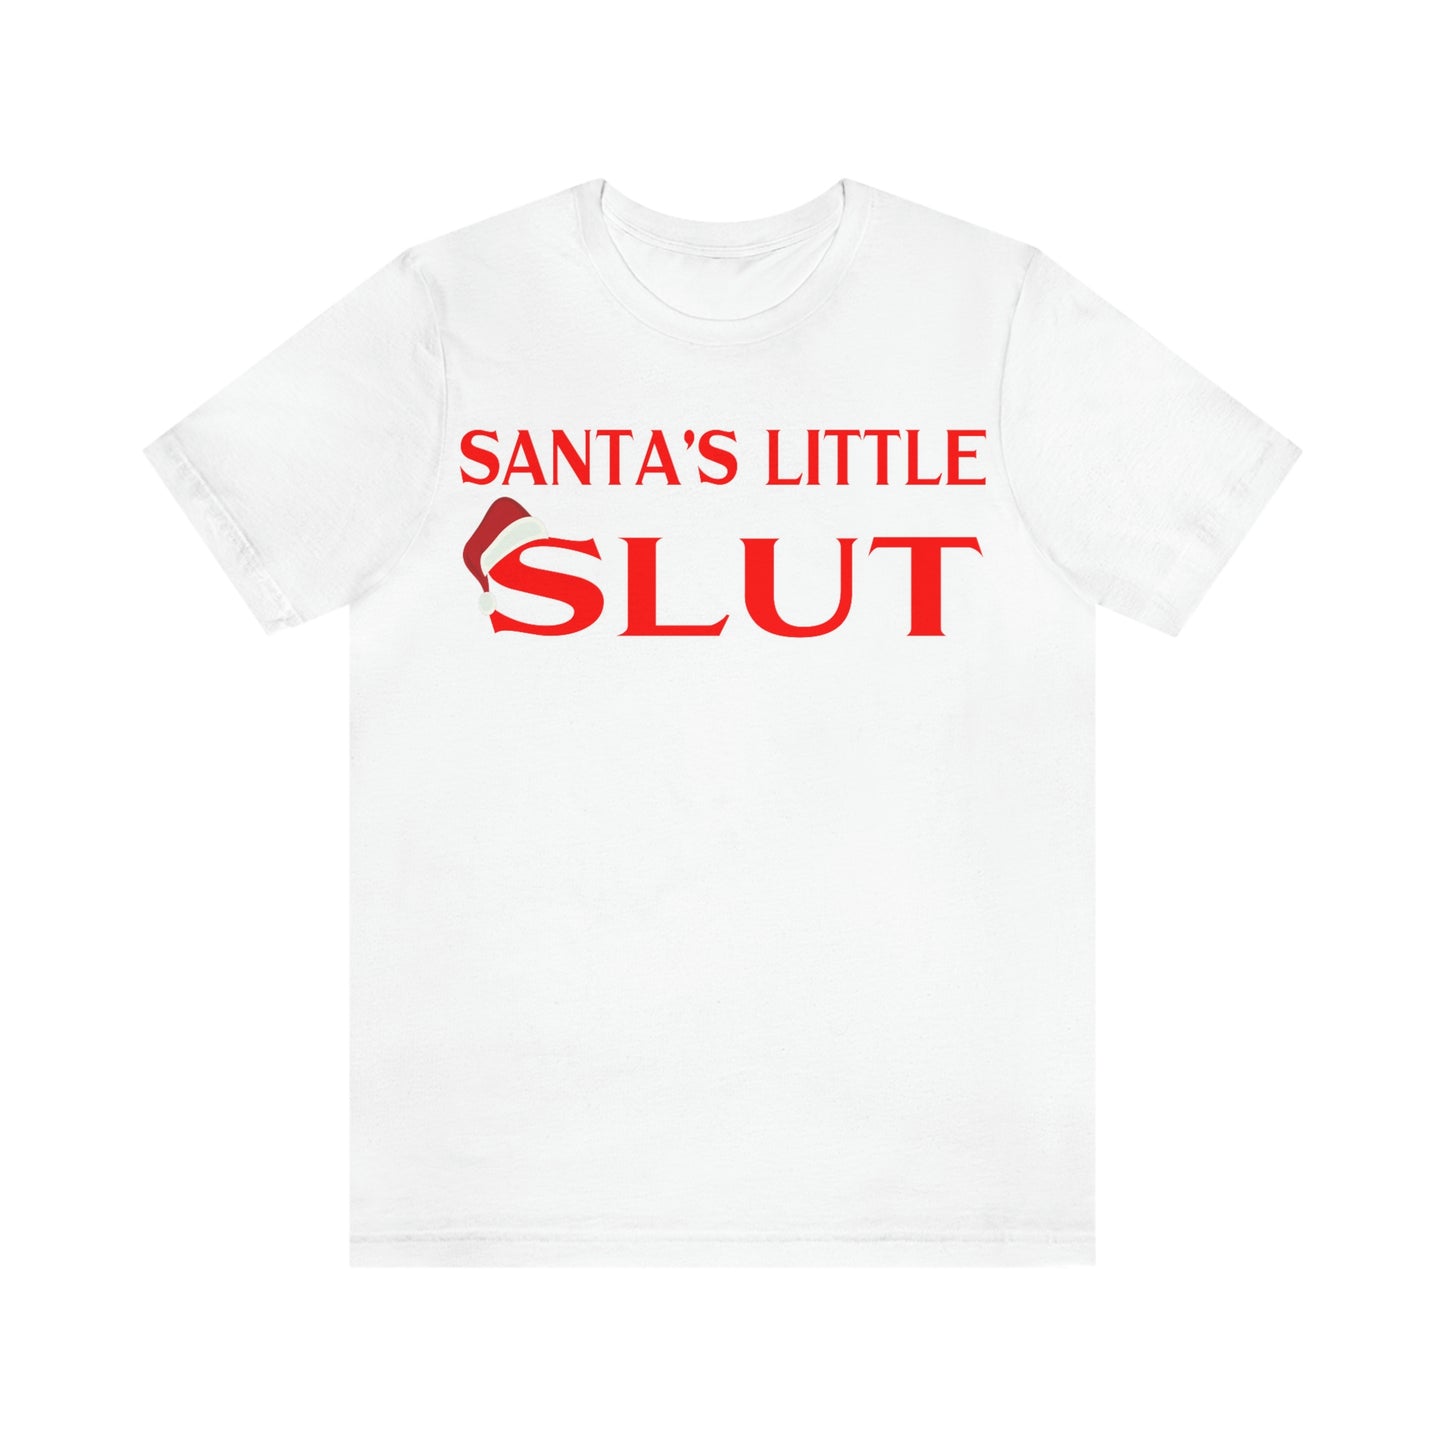 Santa's Little Slut Tee